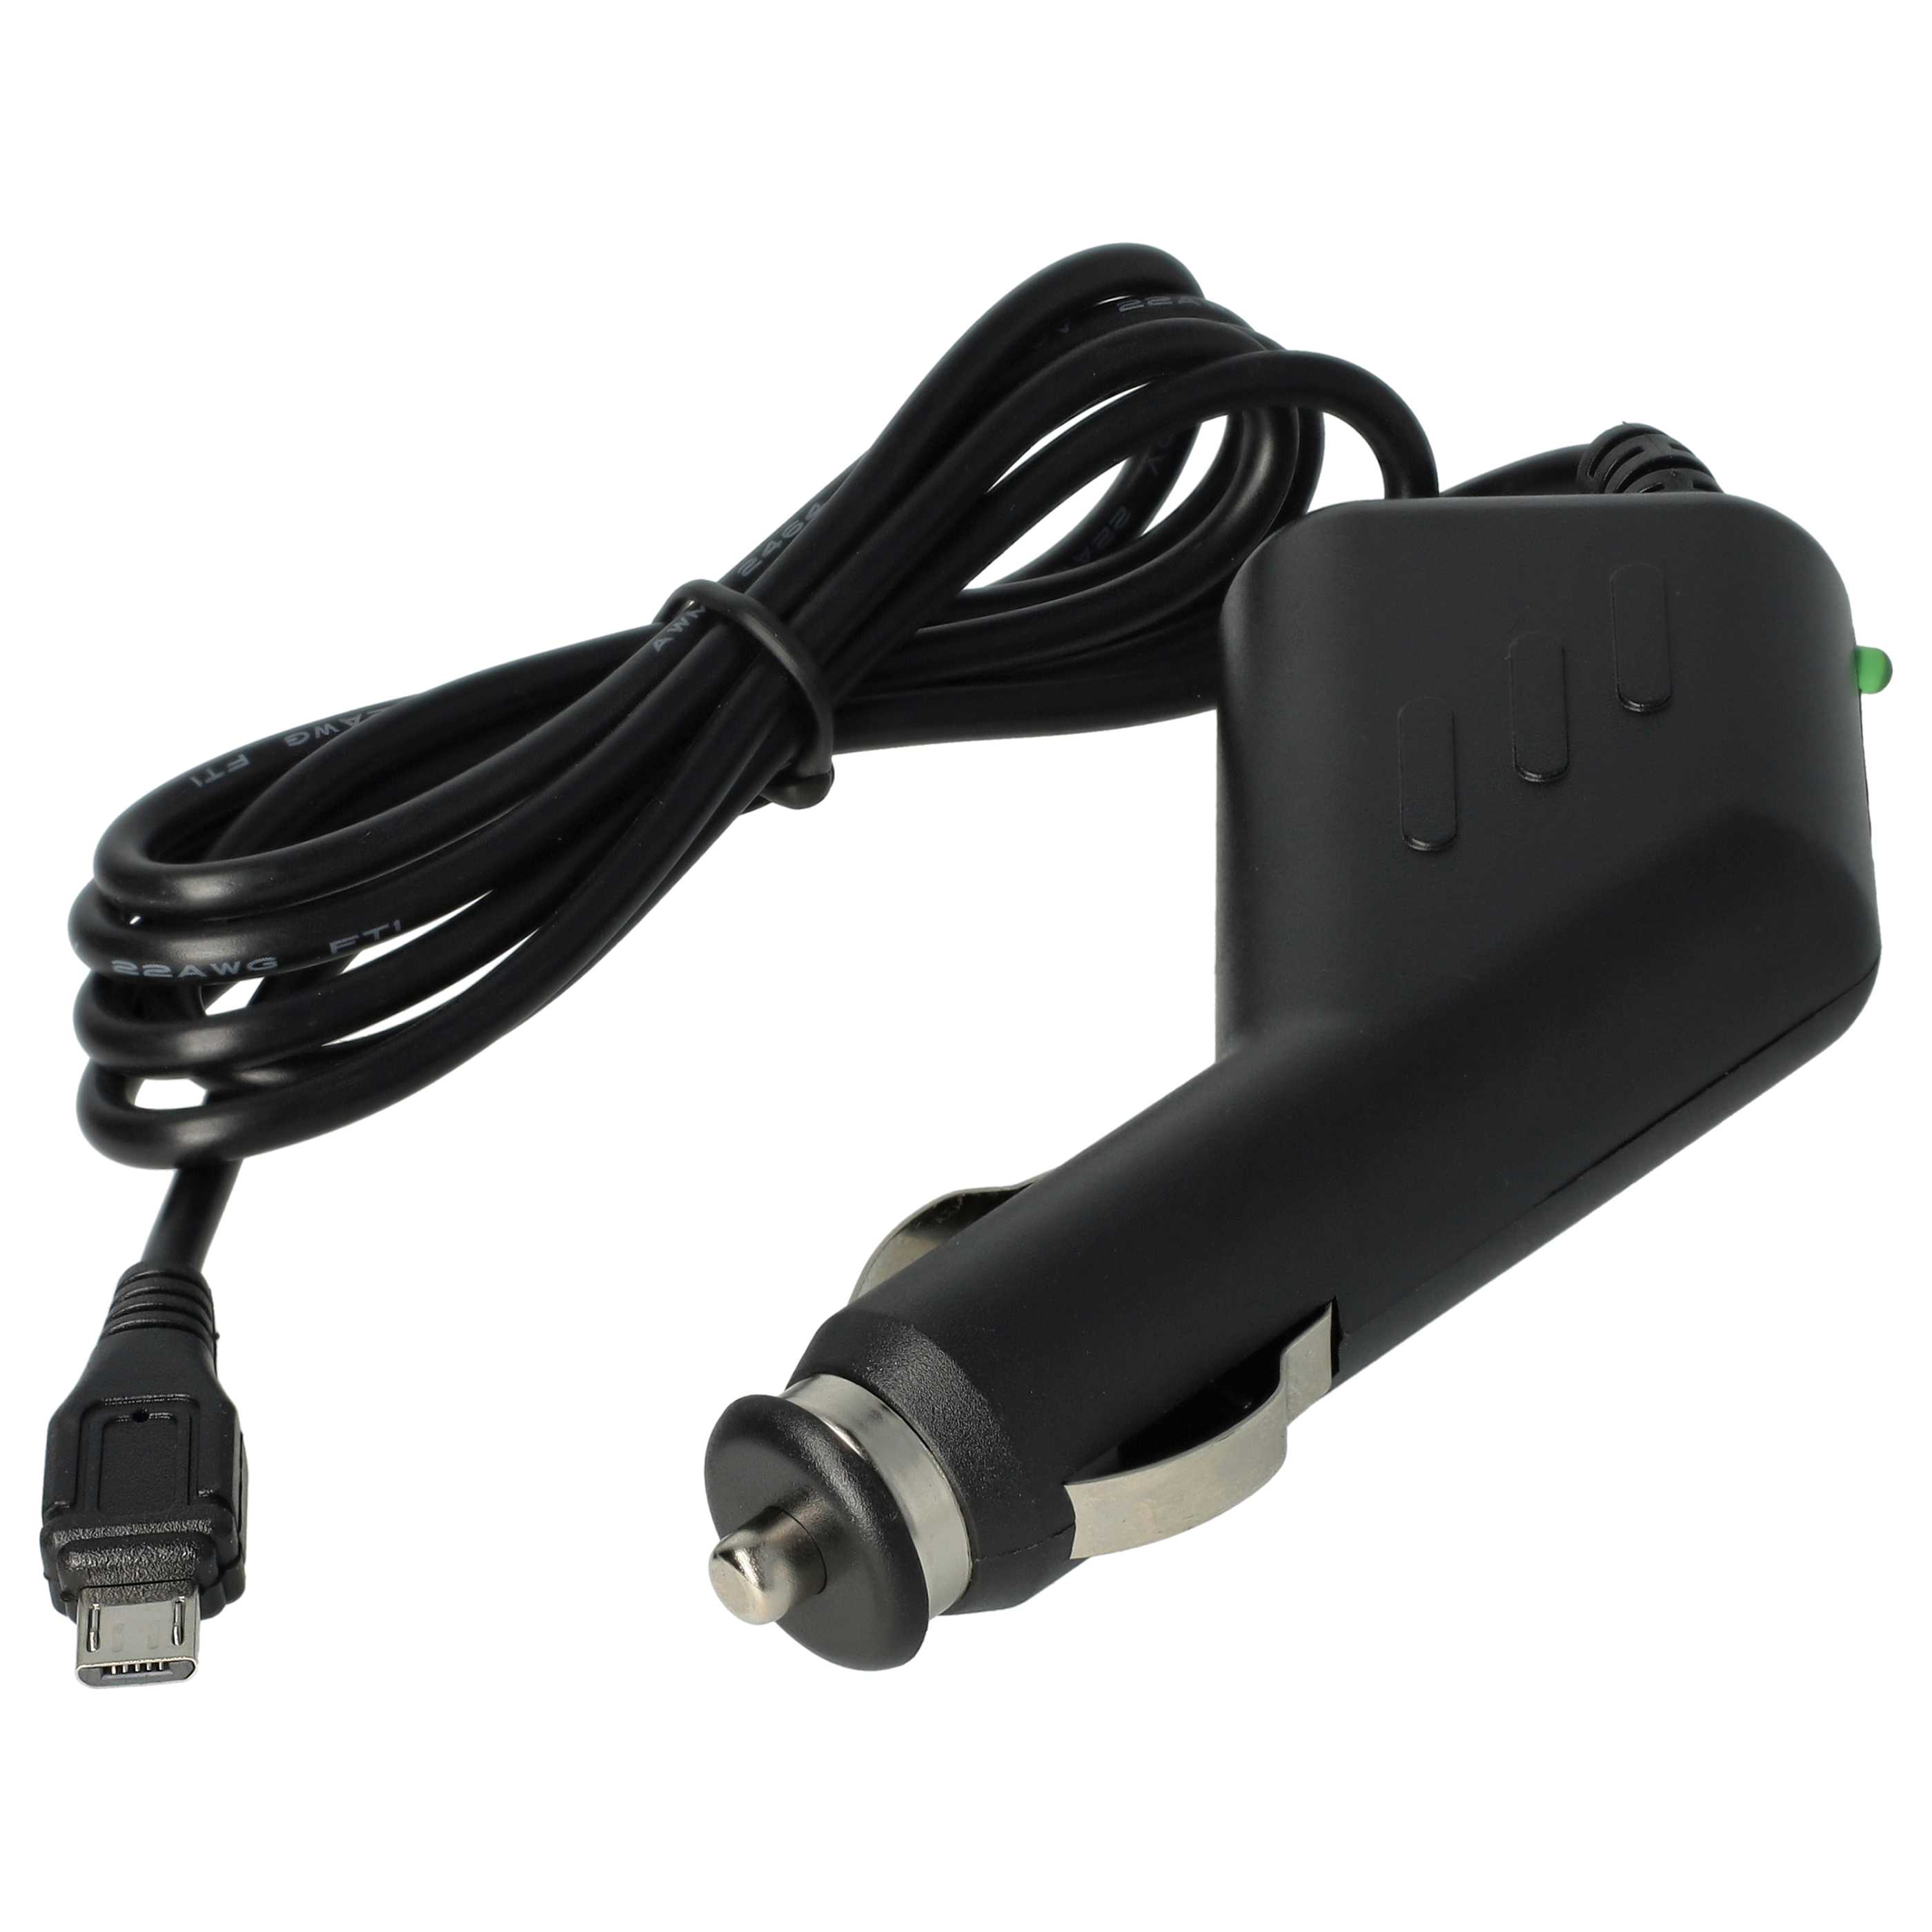 Cargador coche micro USB 2,0 A para smartphone, GPS Olympia, etc. - Cable de carga